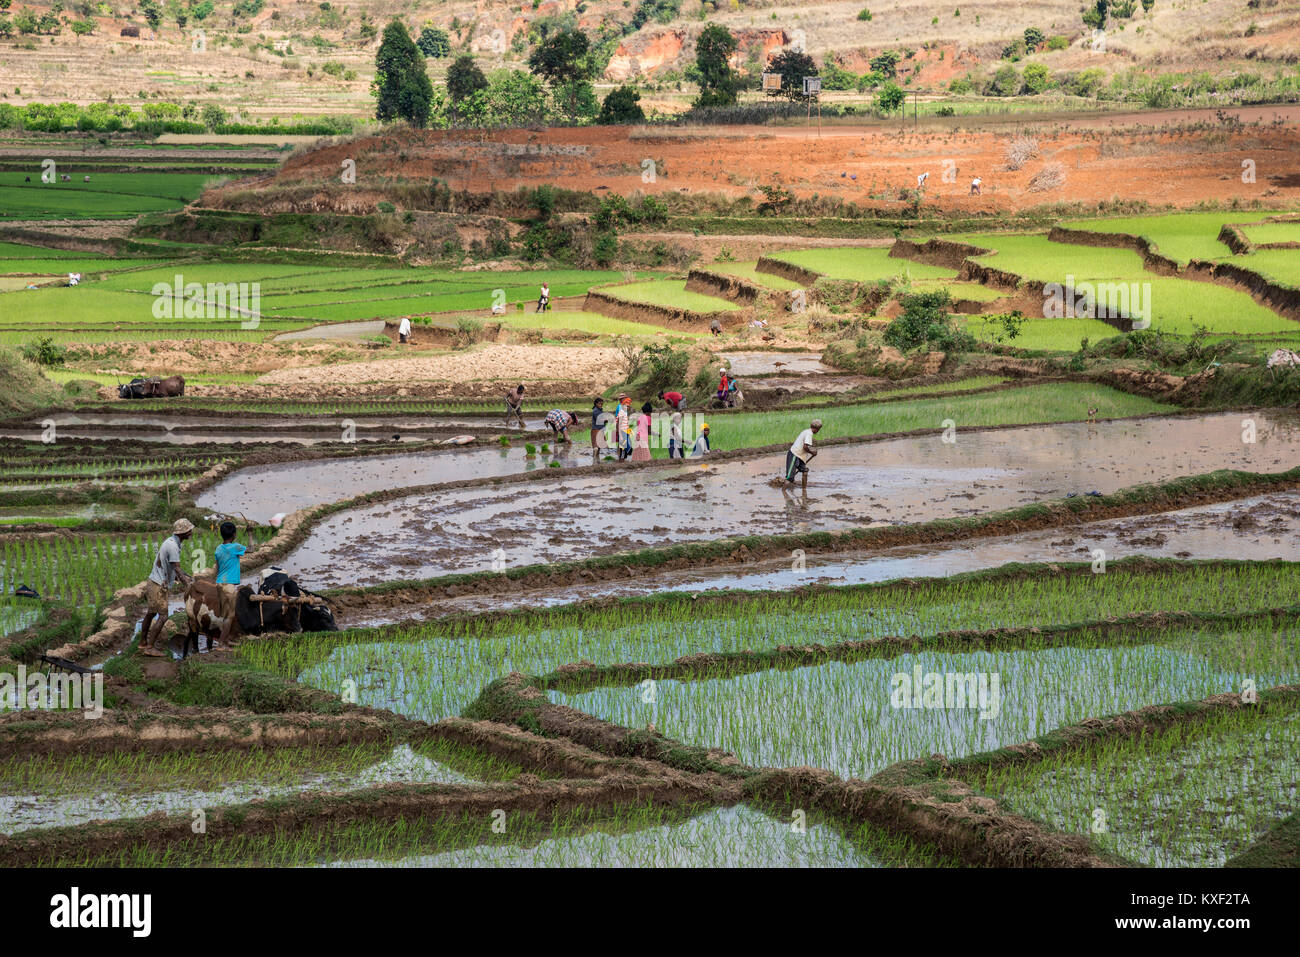 Les locaux occupés à travailler dans les champs du riz dans le sud de Madagascar, l'Afrique. Banque D'Images